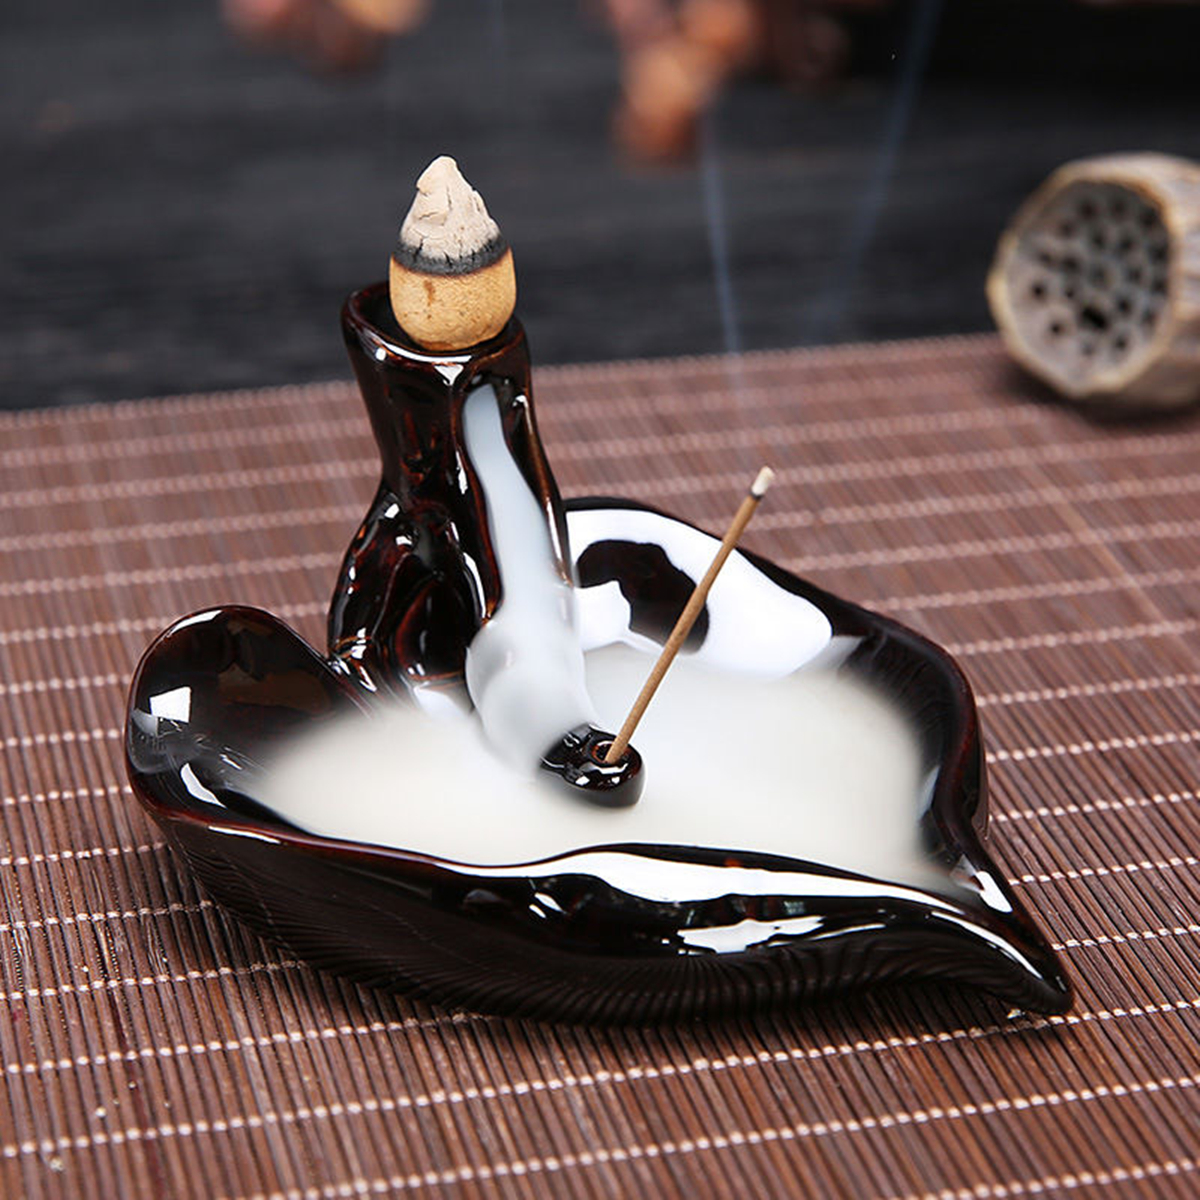 Ceramique en ceramique noire faite a la main Fournisseur de bruleurs a encens Benitier Coussin de refoulement Accueil Artisanat Ornements